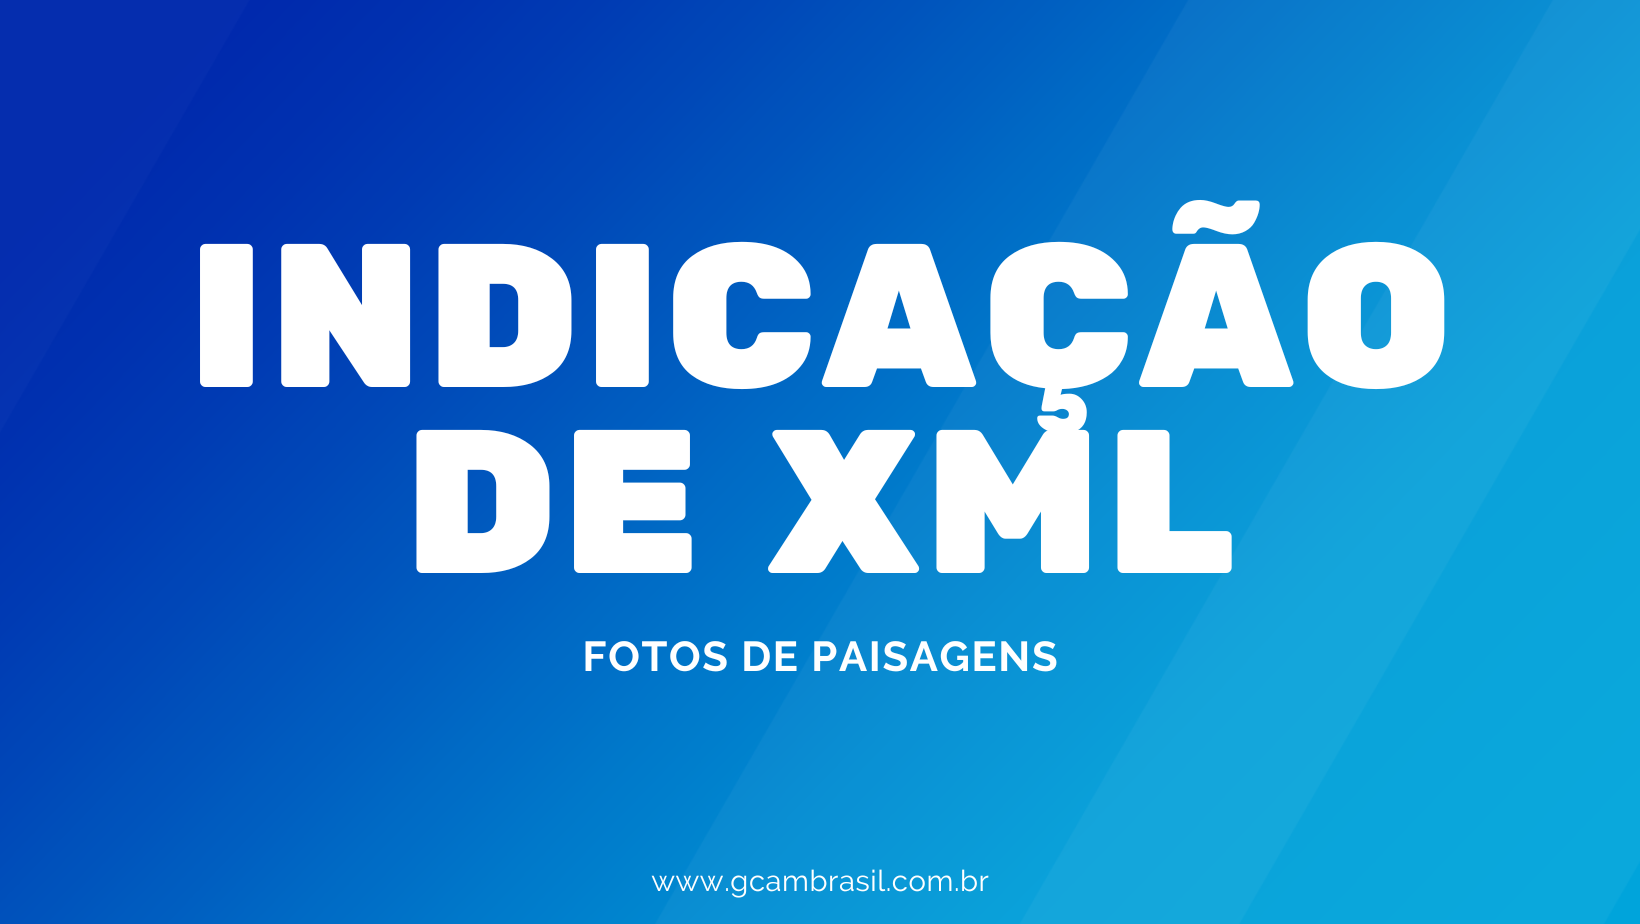 Indicações de XML — Fotos de paisagens